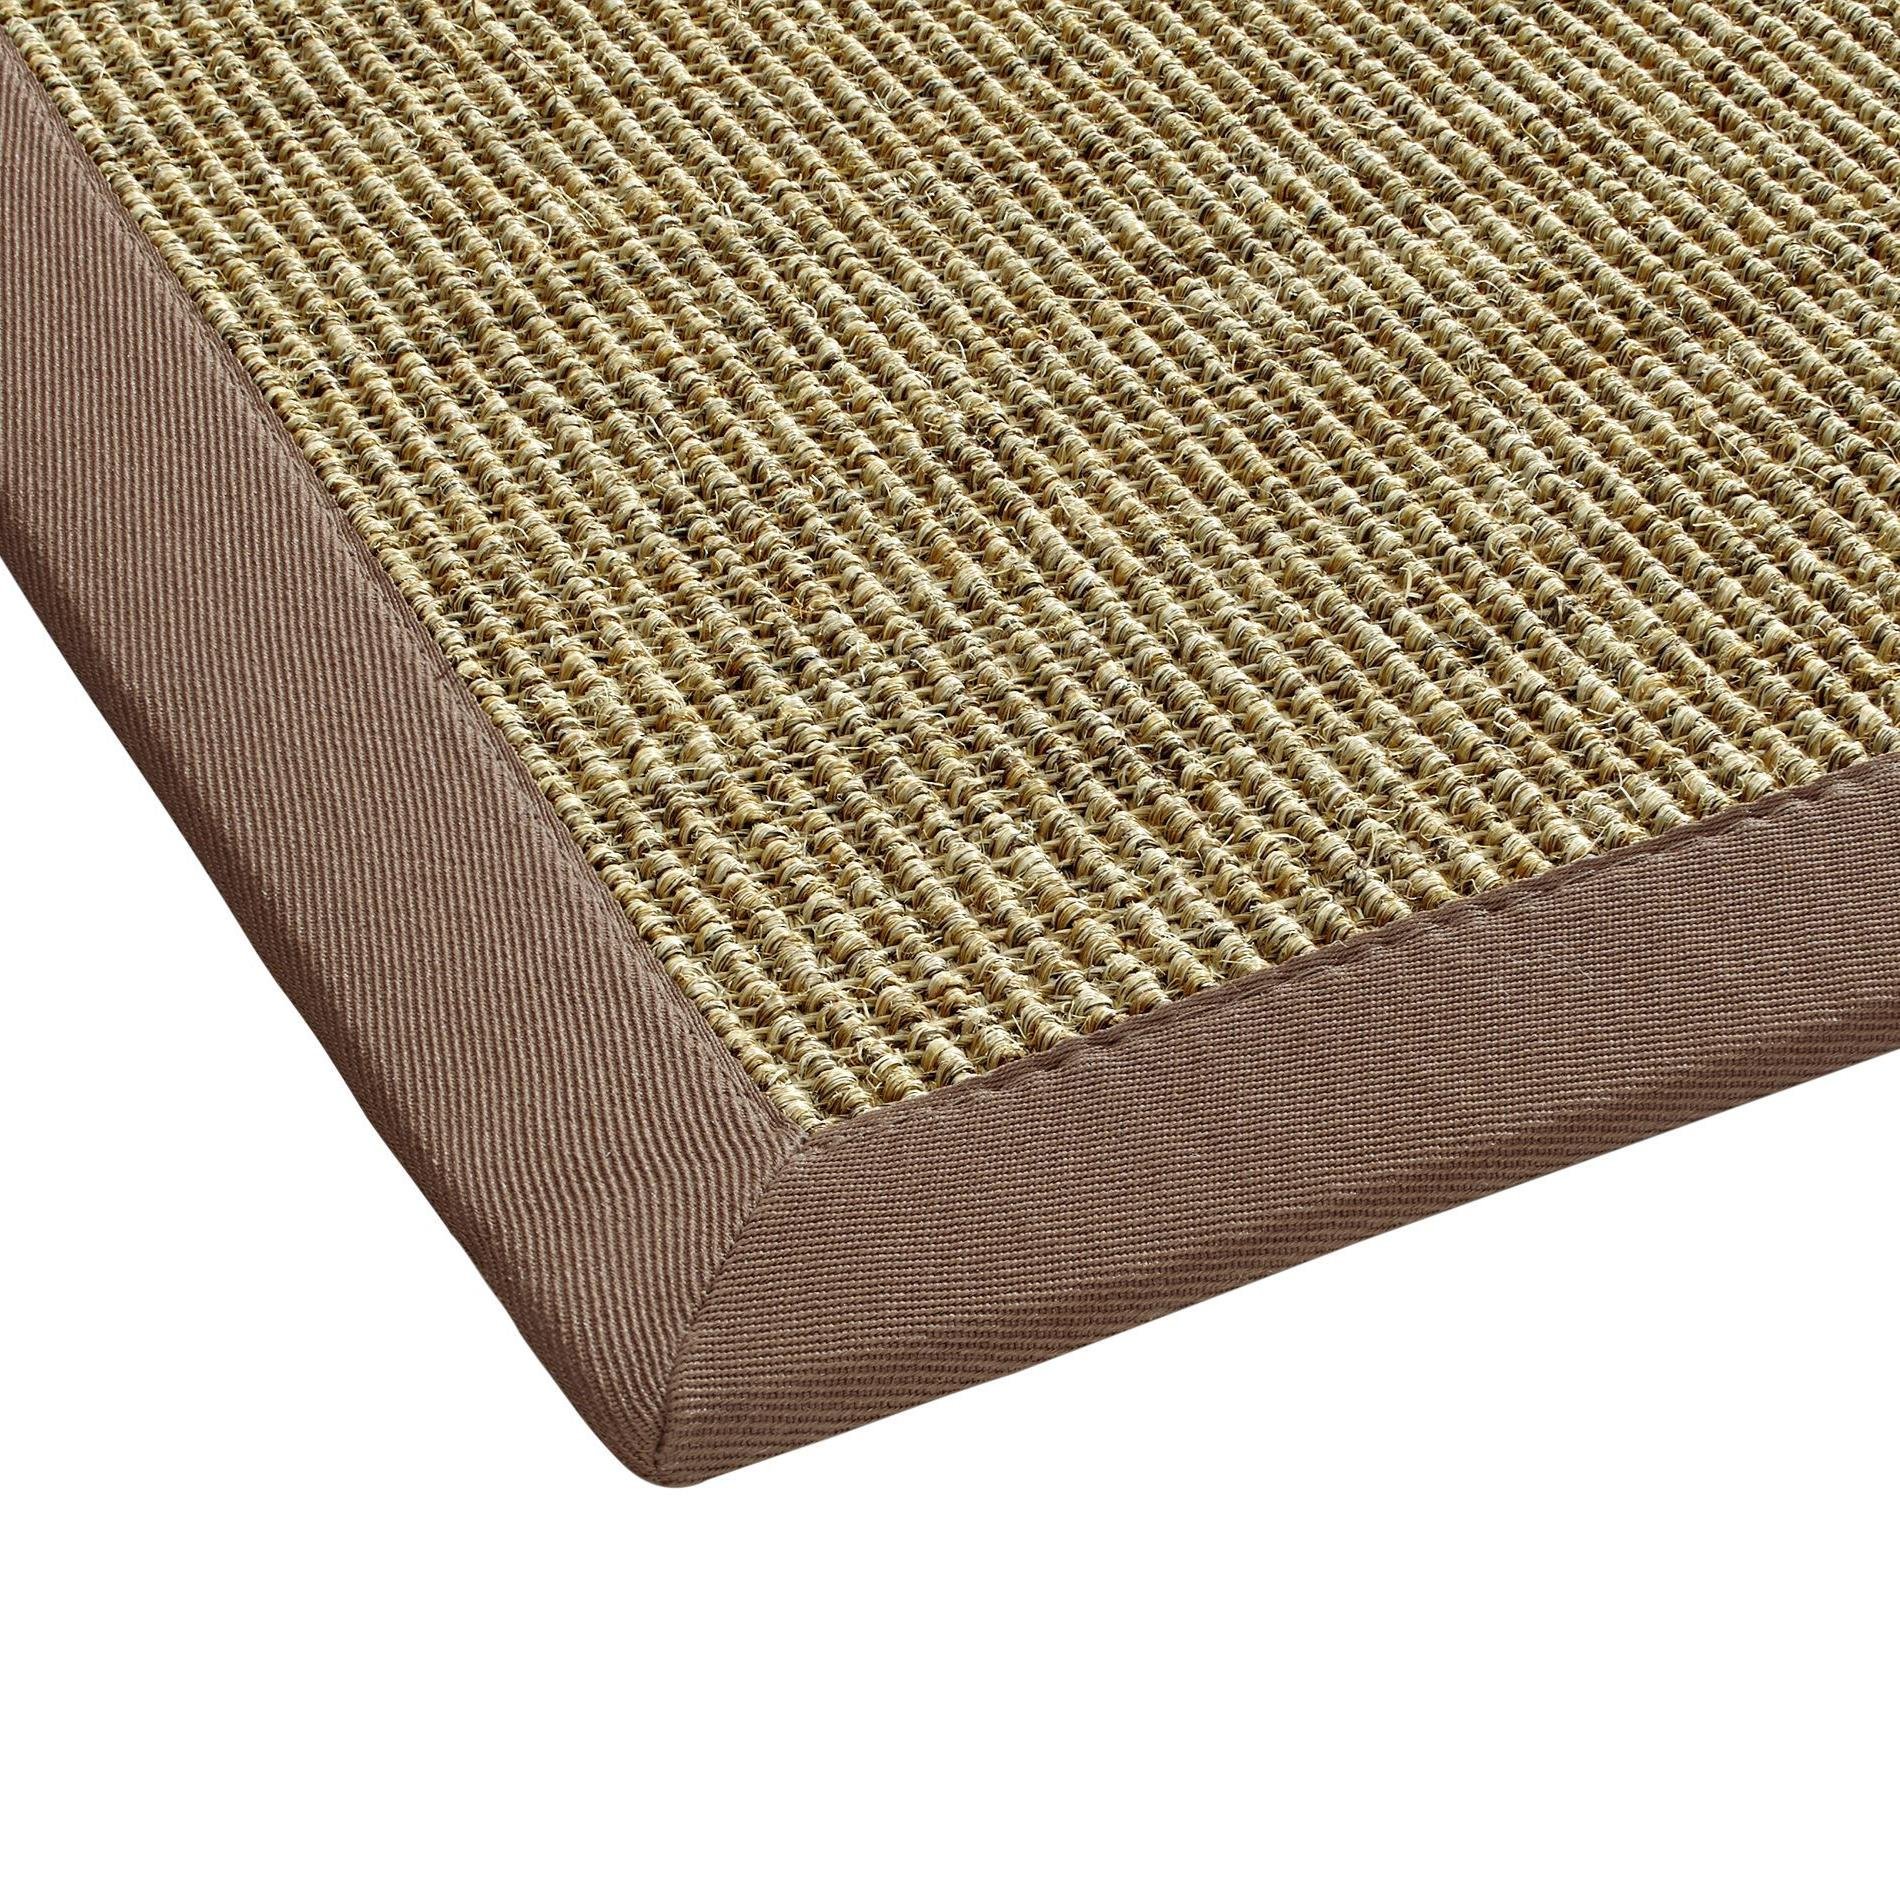 BODENMEISTER Sisal-Teppich modern hochwertige Bordüre Flachgewebe, verschiedene Farben und Größen, Variante: braun beige natur, 160x230